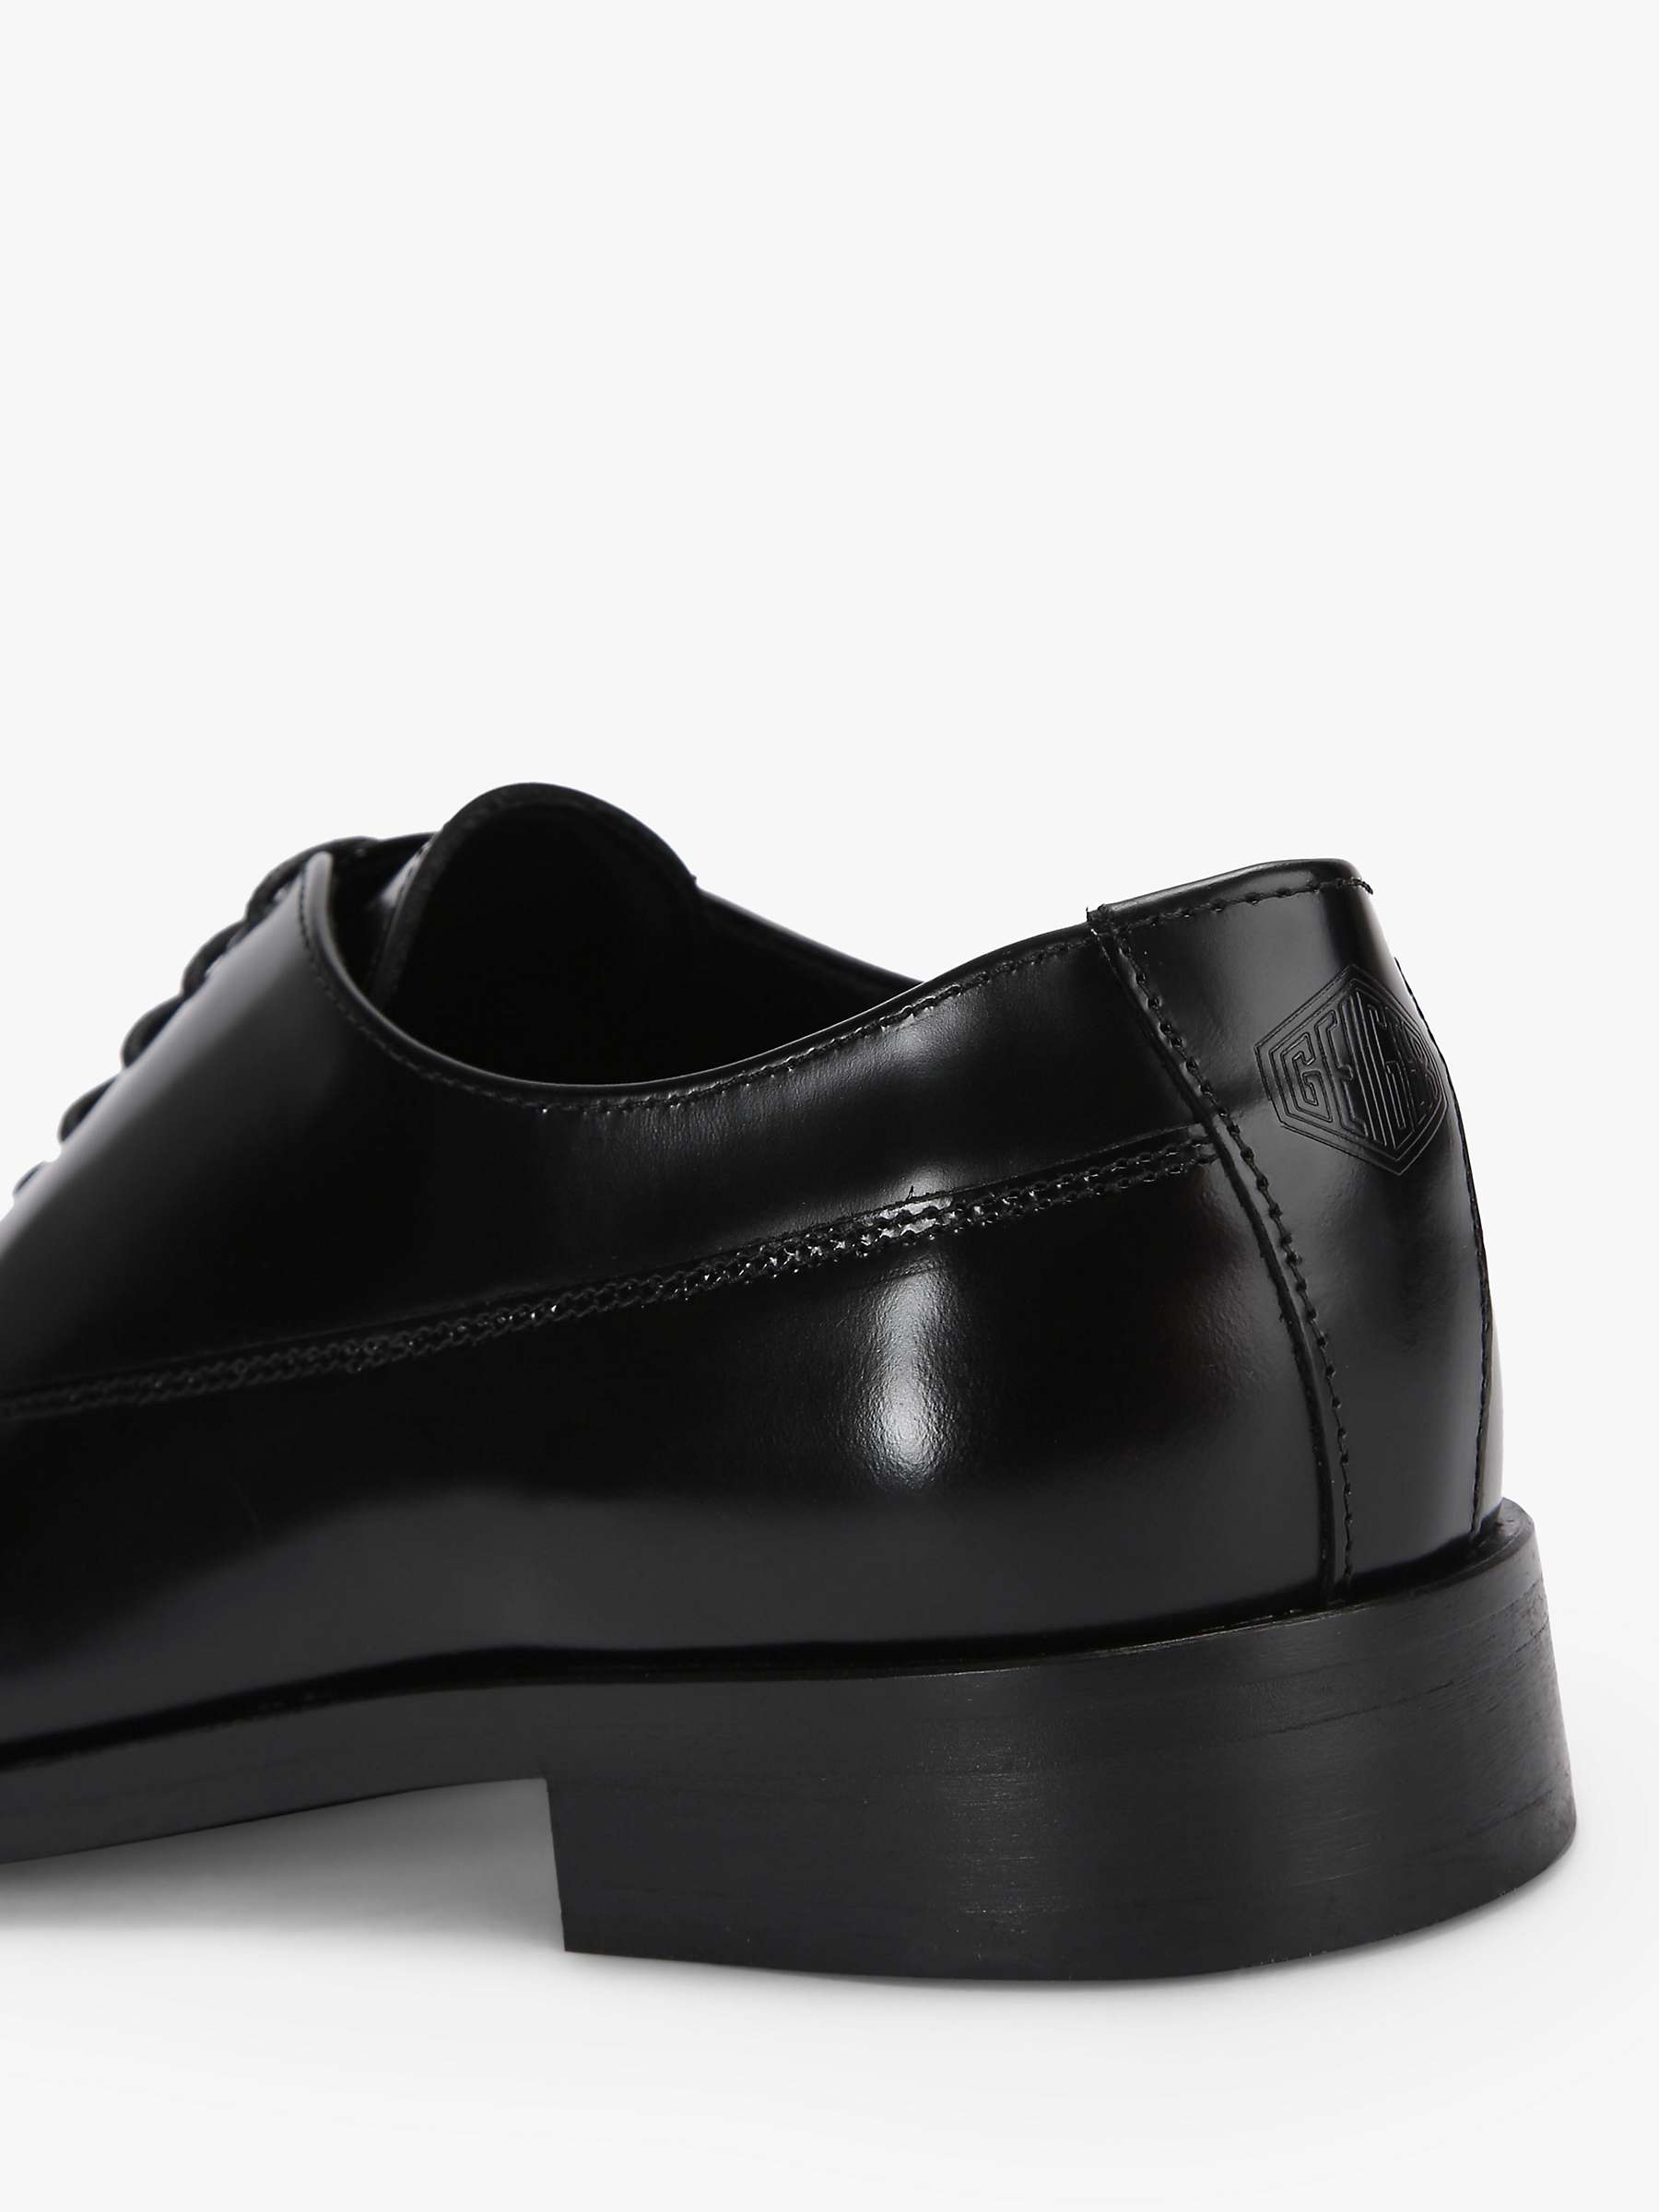 Buy Kurt Geiger London Hunter Oxford Shoes, Black Online at johnlewis.com